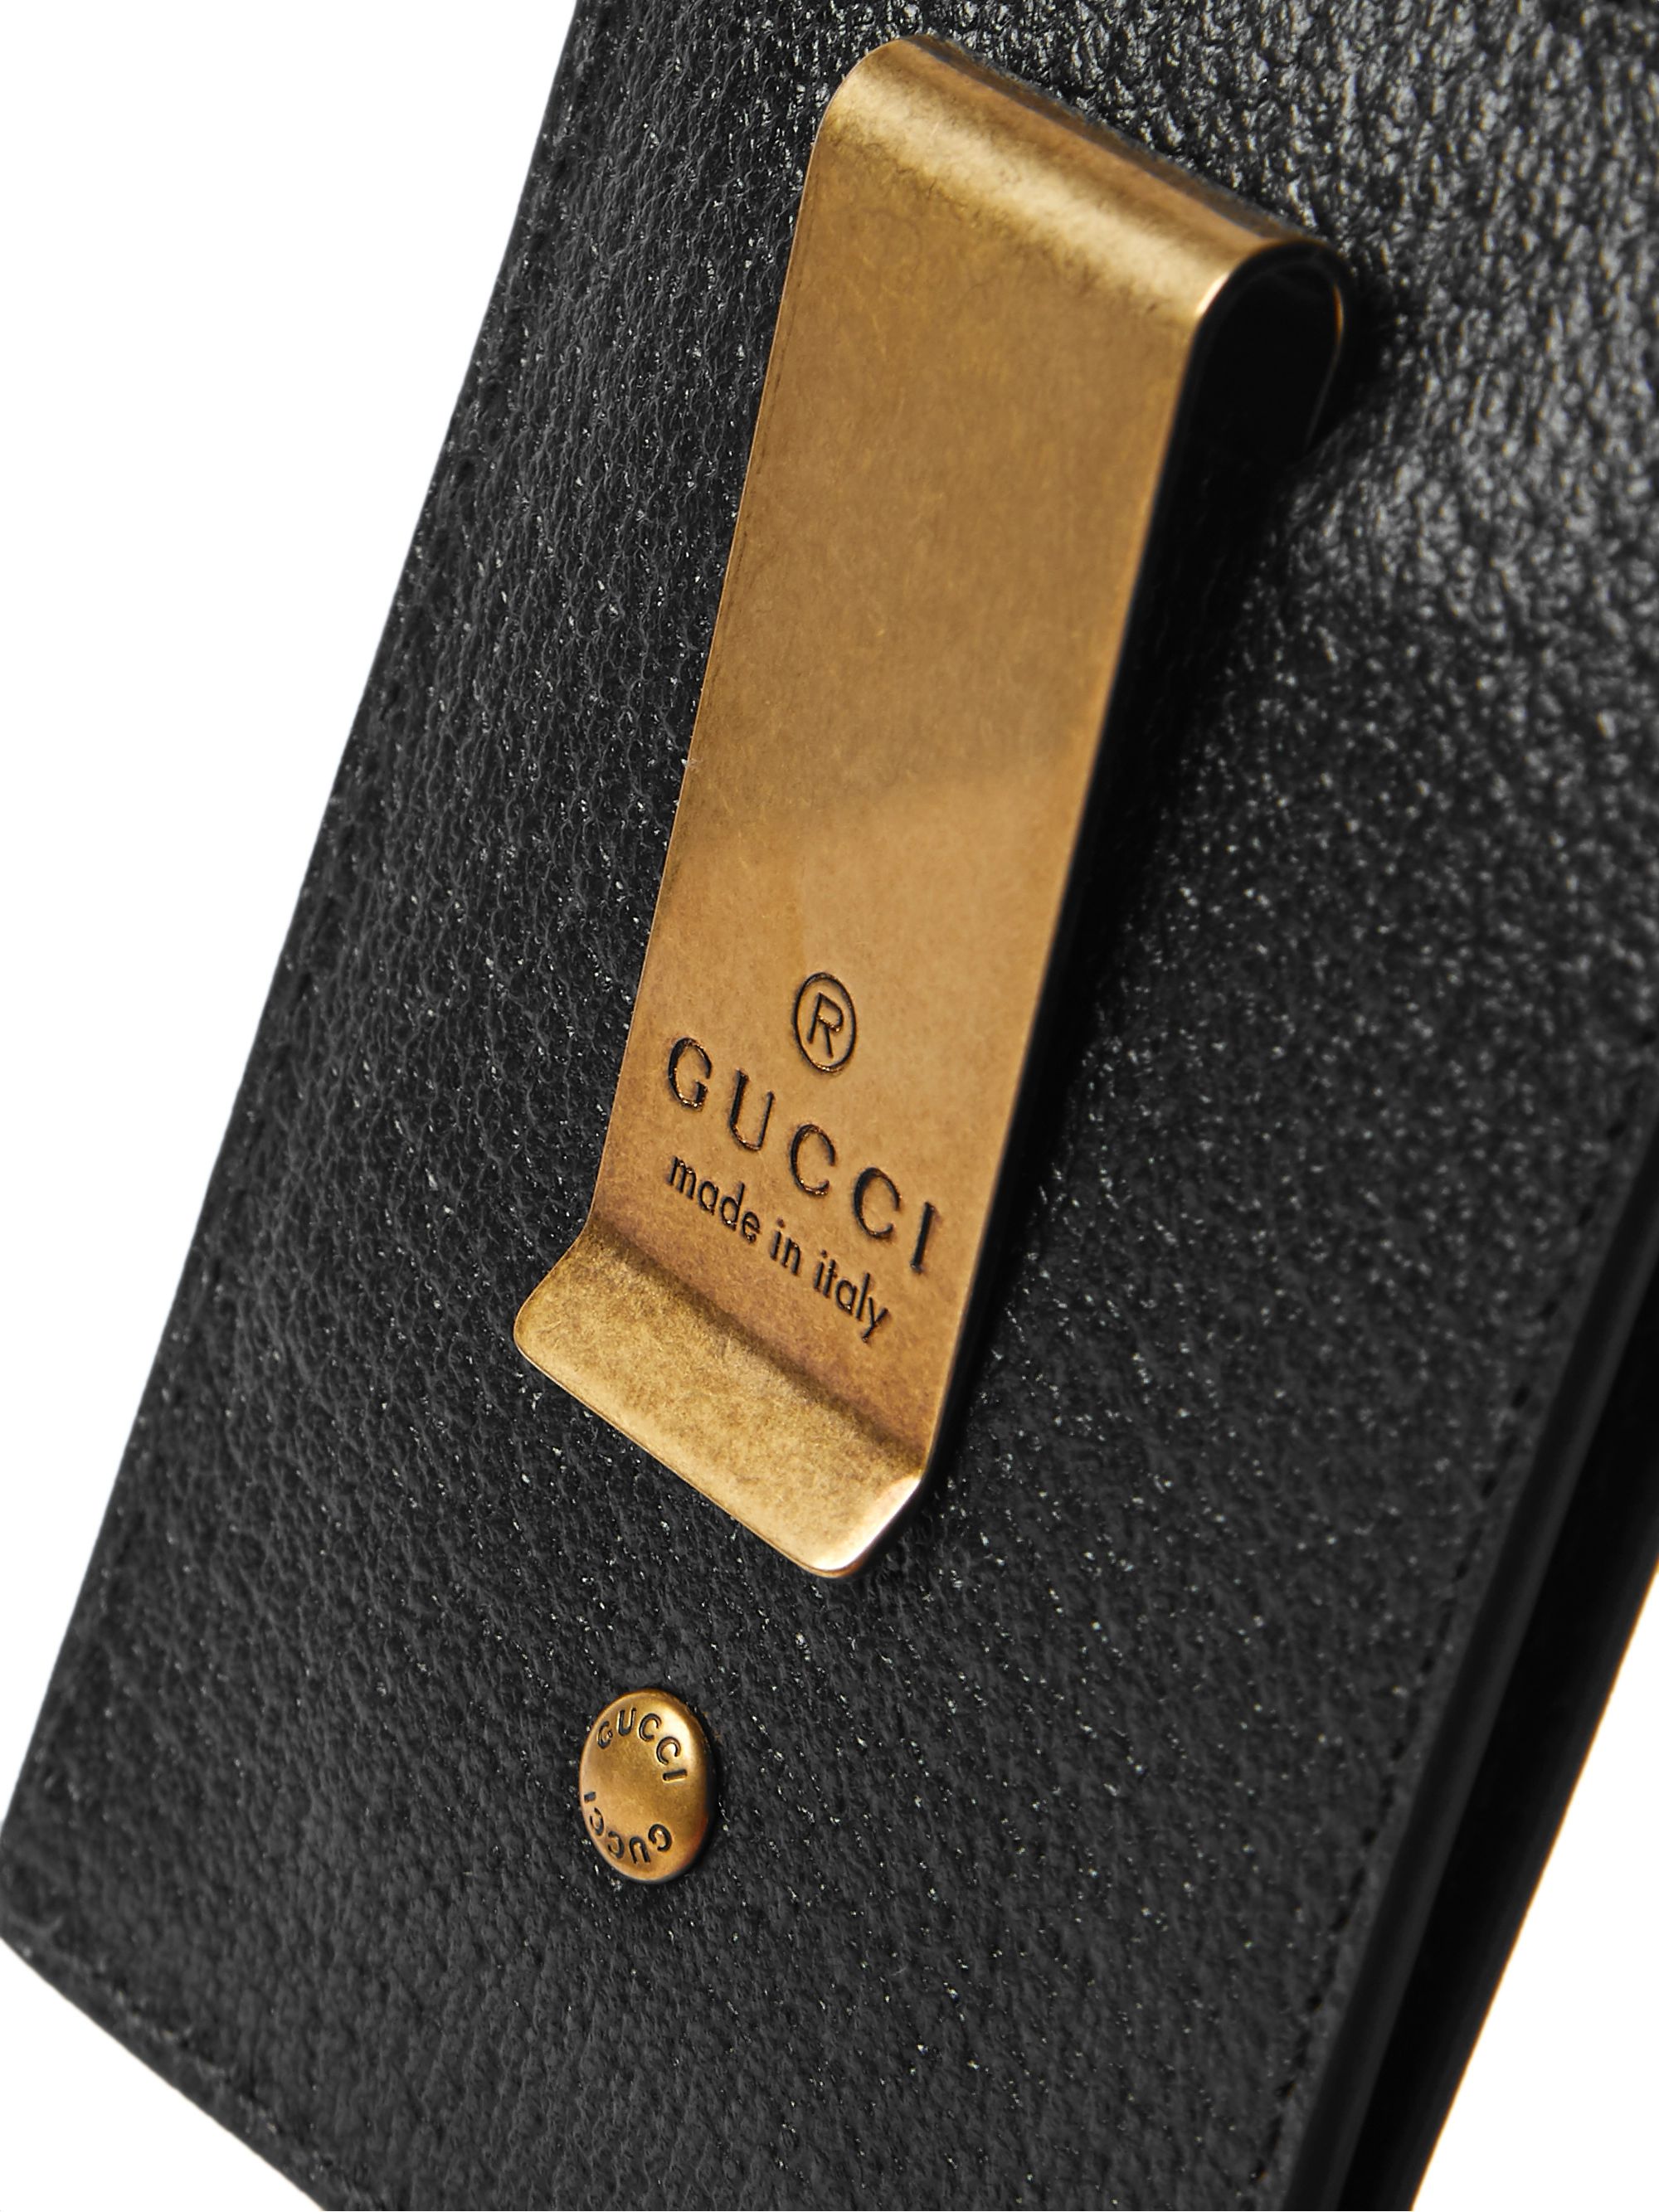 gold gucci money clip